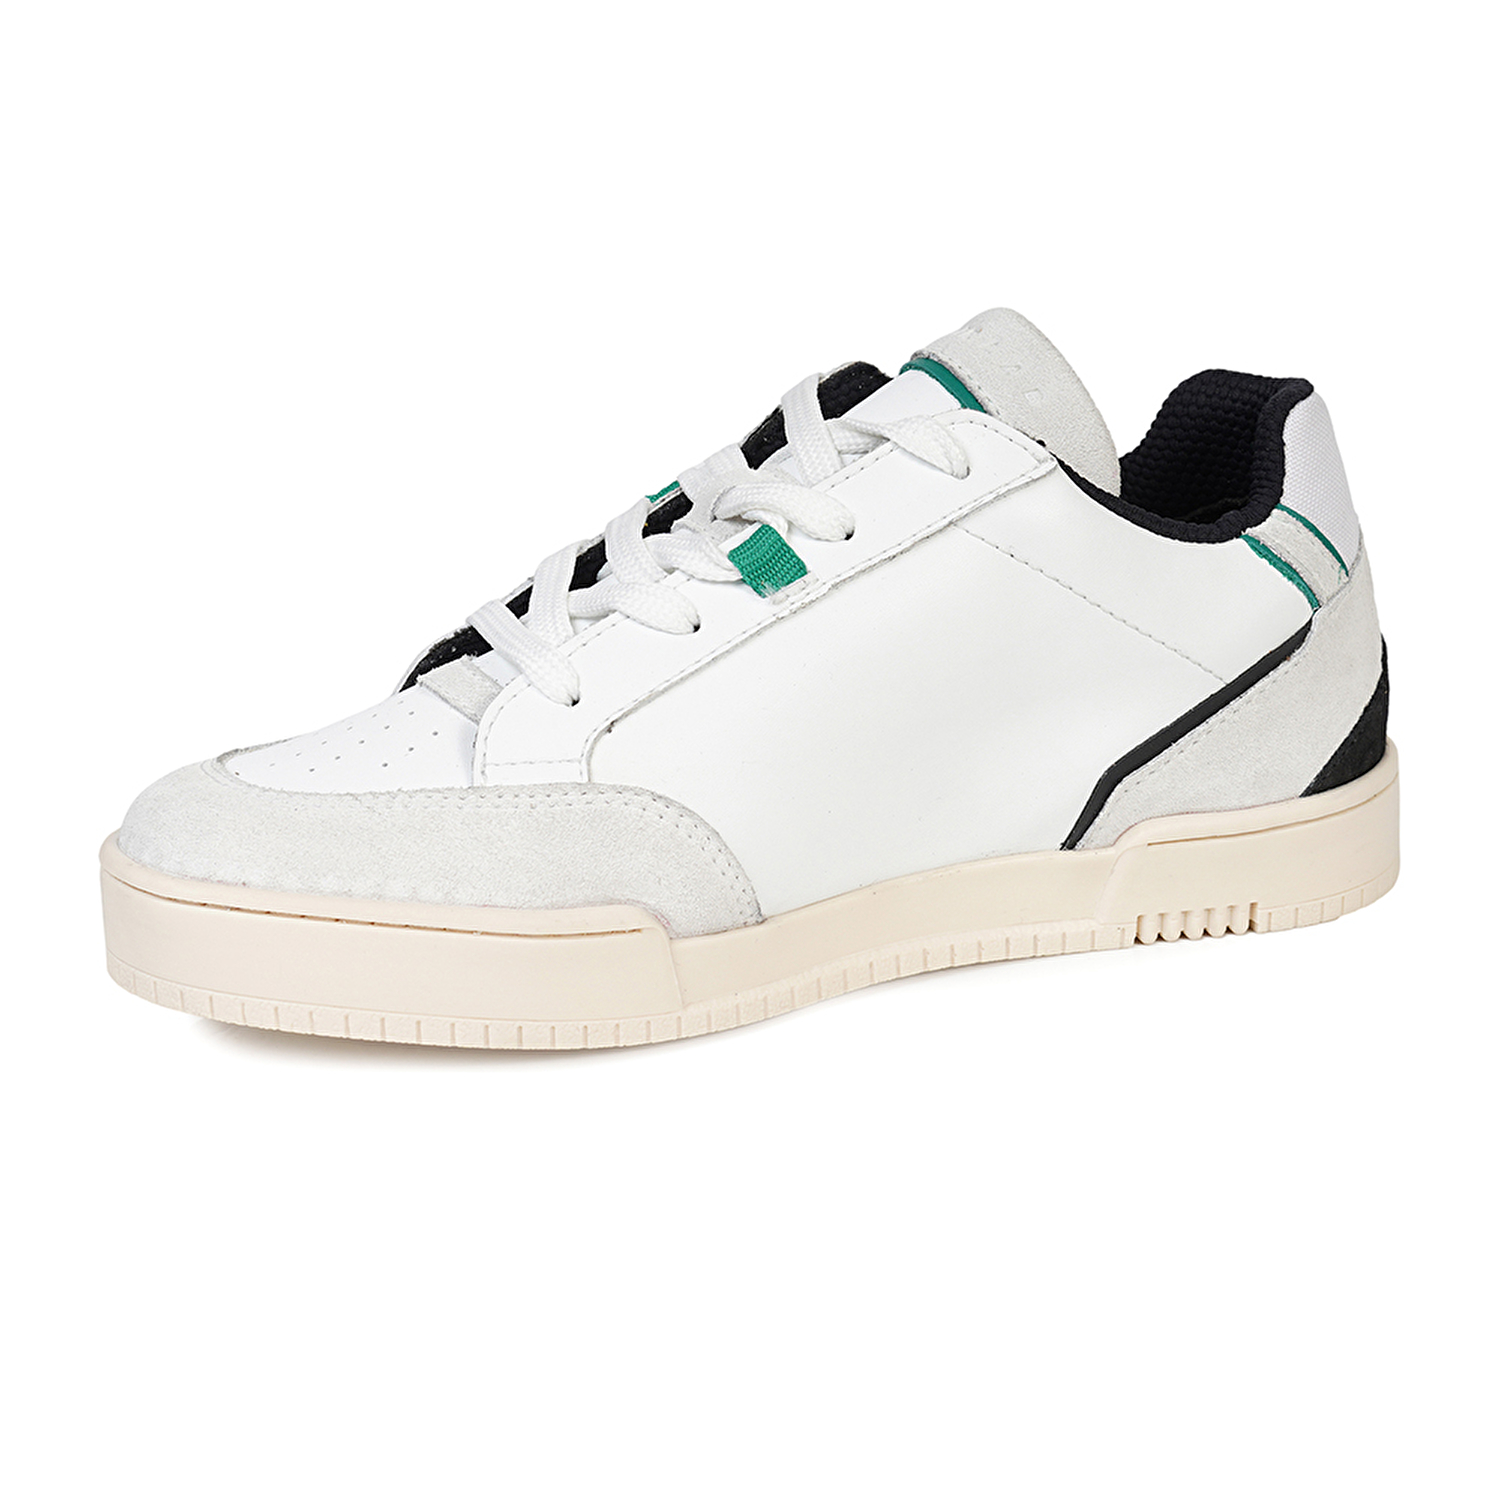 Kadın Beyaz Hakiki Deri Sneaker Ayakkabı 4Y2SA45151-2